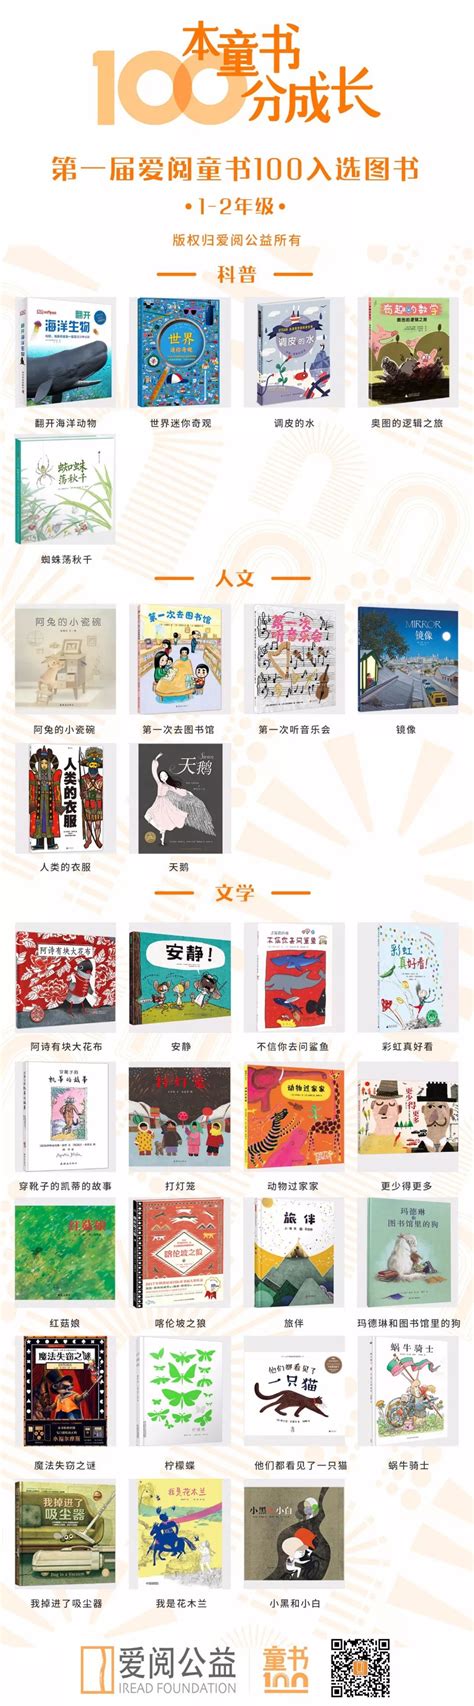 2019年童书排行榜_书香童年童书排行榜年度50佳揭晓_中国排行网